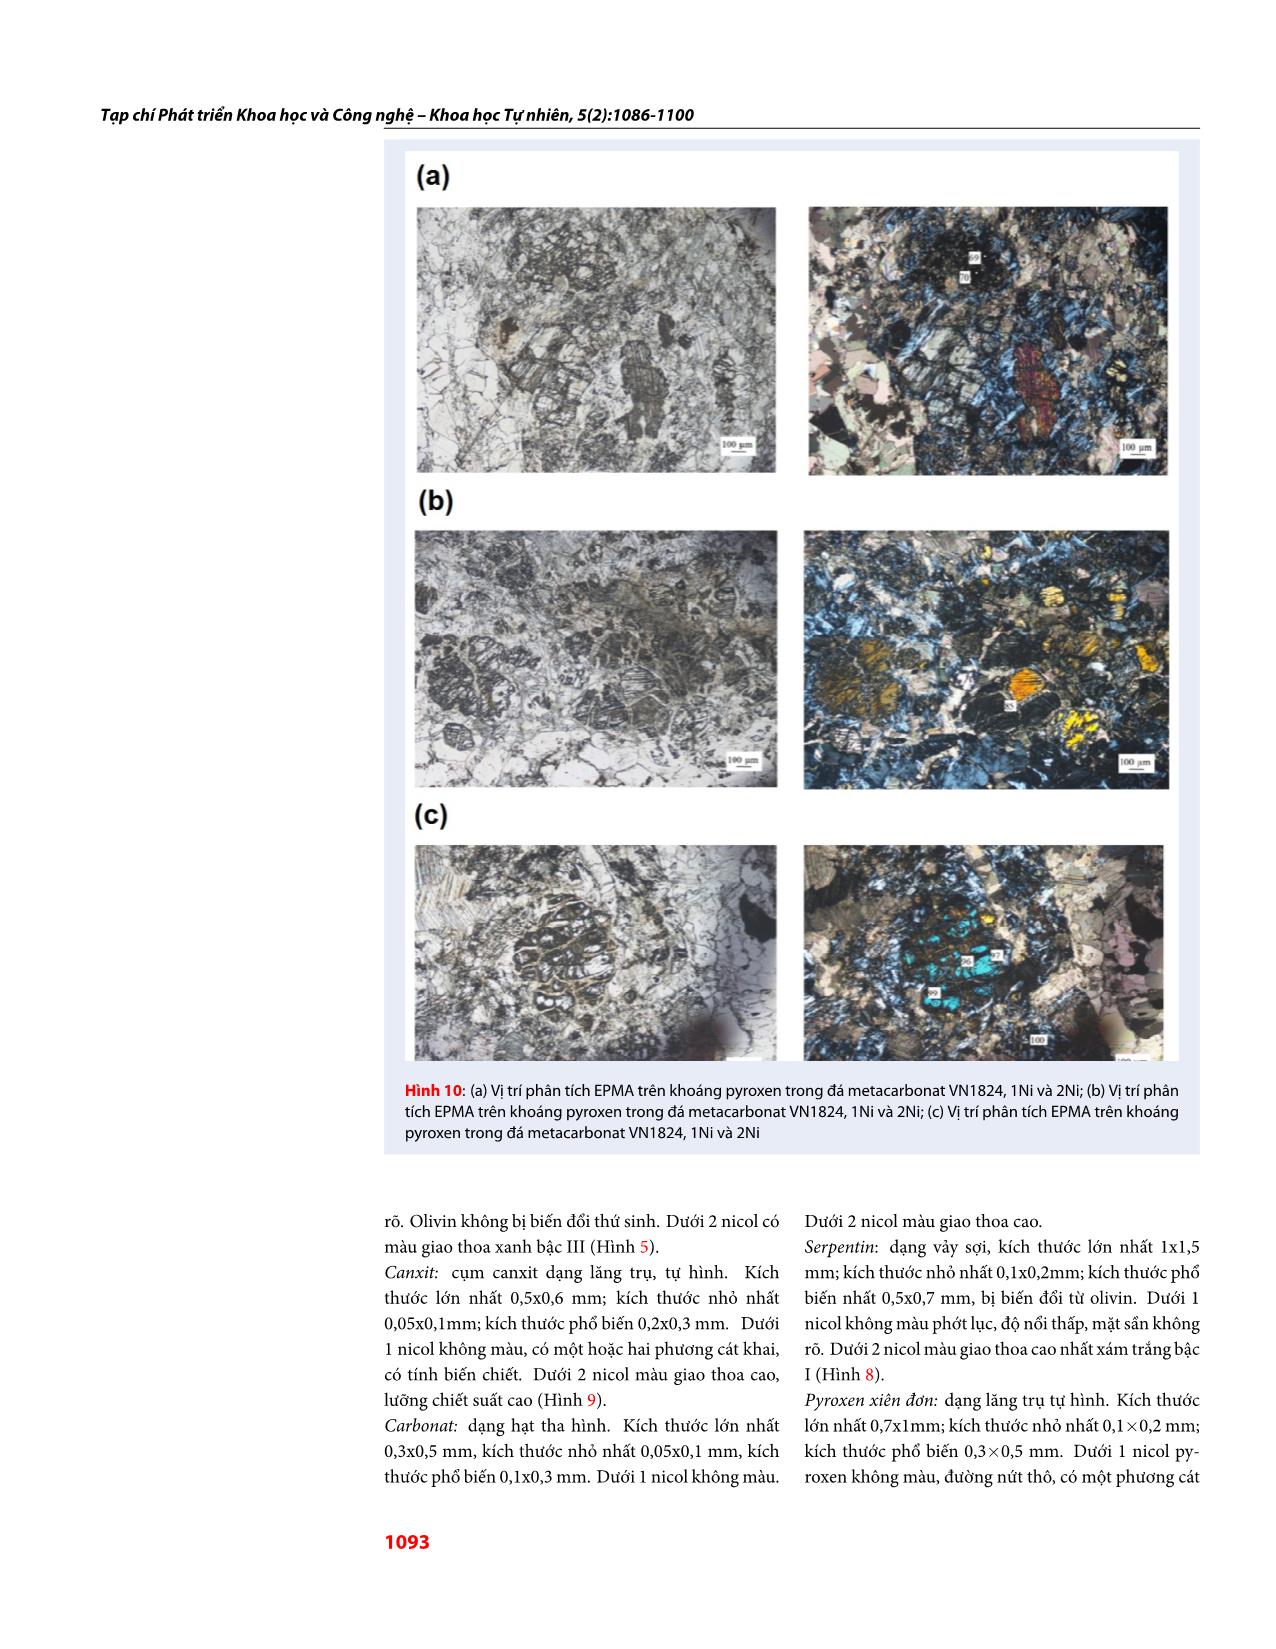 Đặc điểm thành phần khoáng vật trong đá metacarbonat khu vực Sa Thầy, Kon Tum và khả năng ứng dụng của metacarbonat trong đá mỹ nghệ trang 8